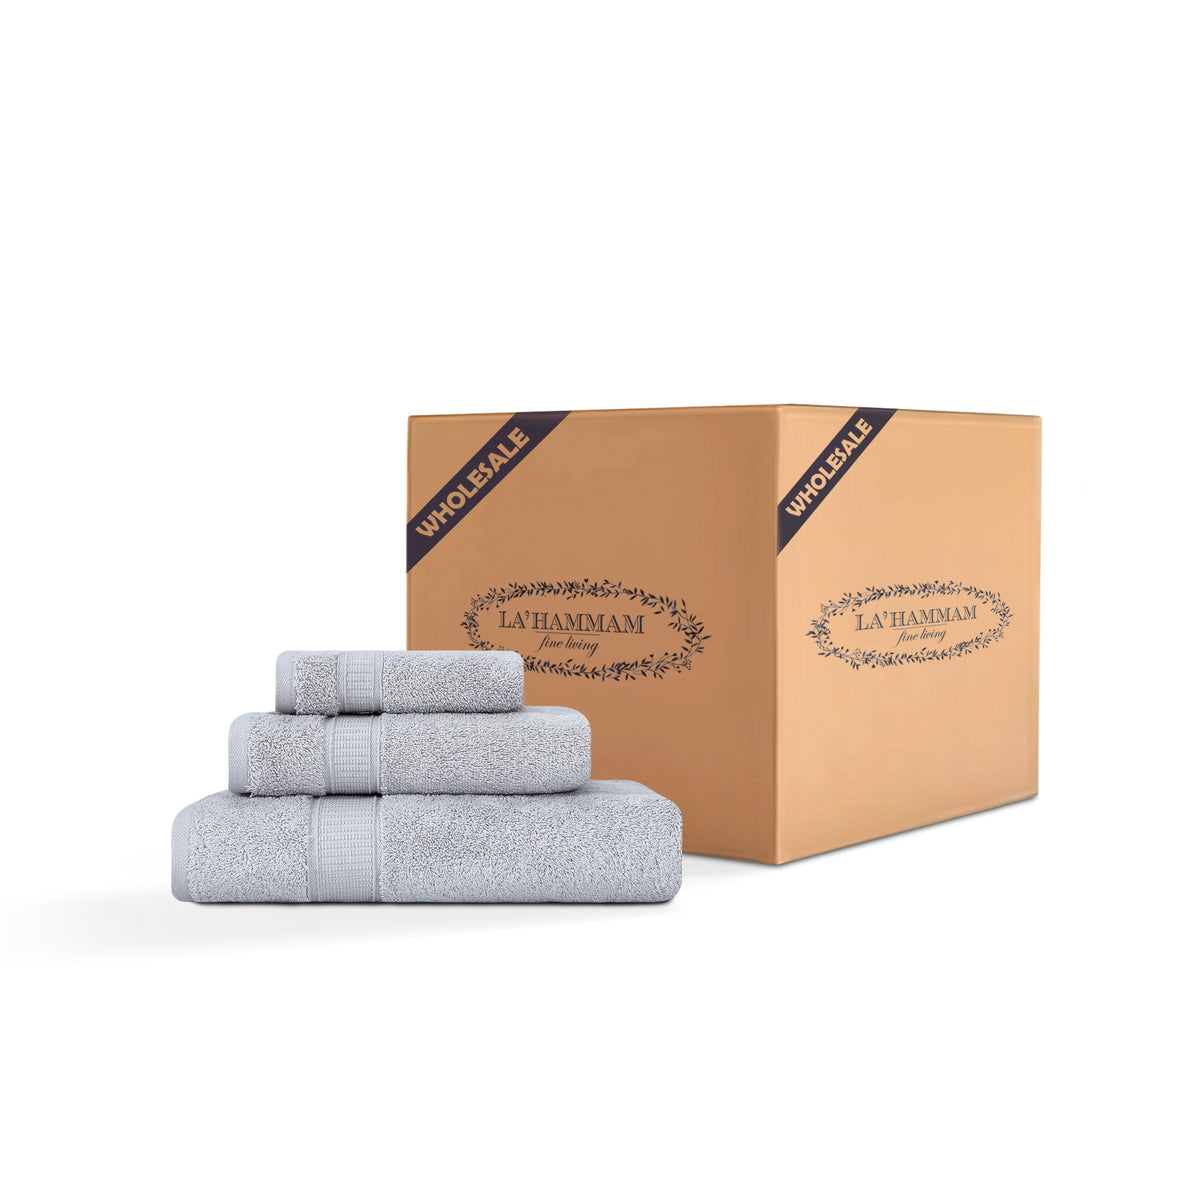 3 Piece Bath Towel Set - 16 Set Case Box